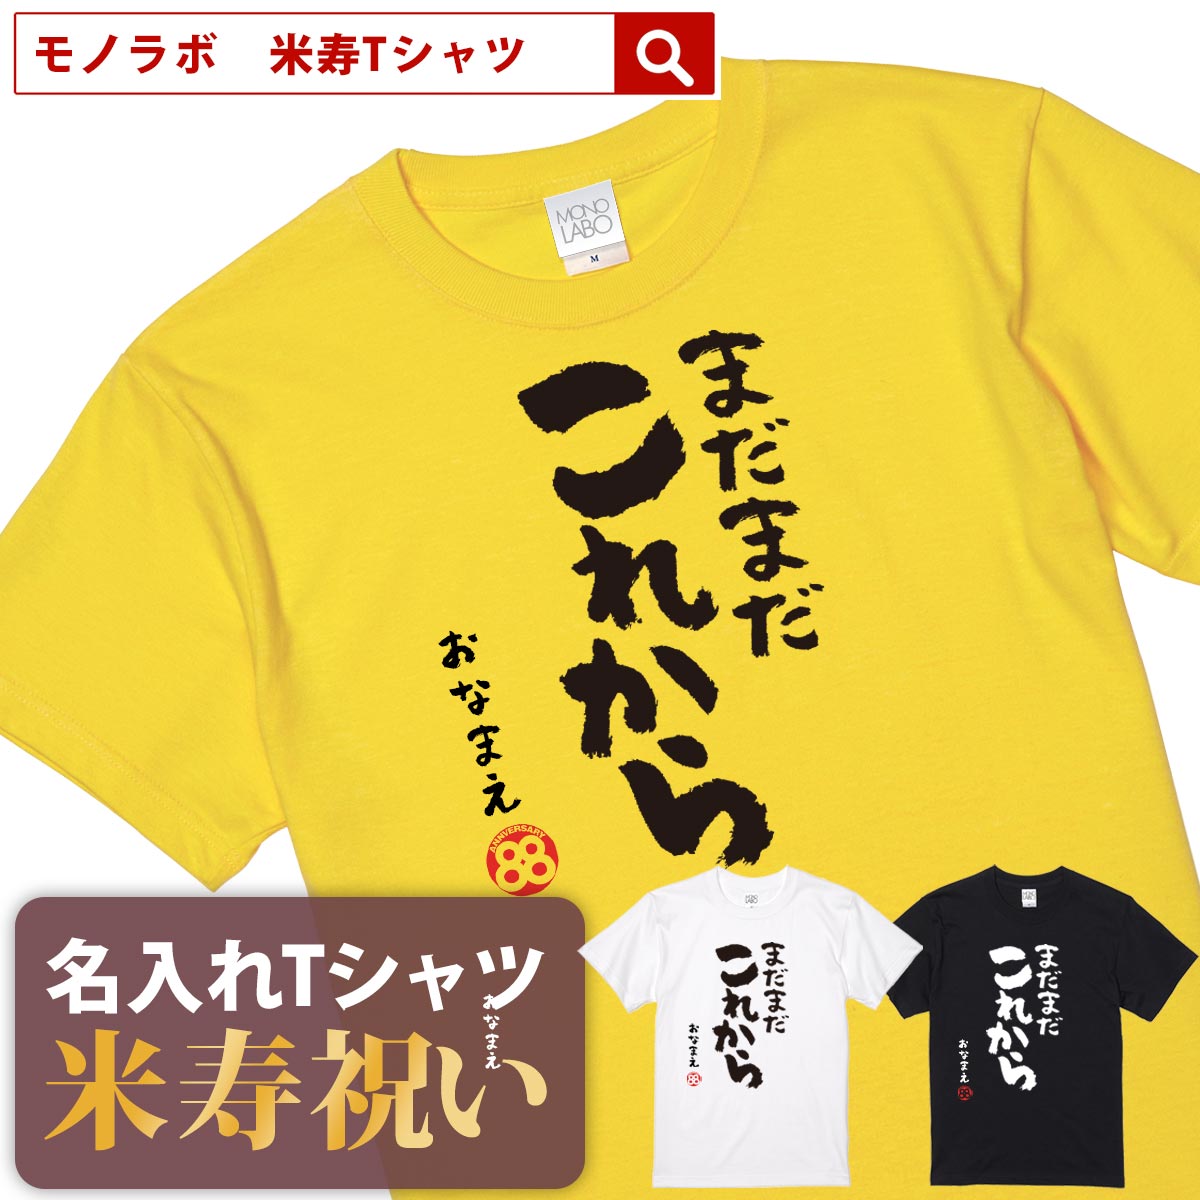 米寿祝い tシャツ 米寿 おもしろ 名入れ 黄色 男性 女性 父 母 プレゼント ちゃんちゃんこの代わり。Tシャツ 送料無料！【まだまだこれから】